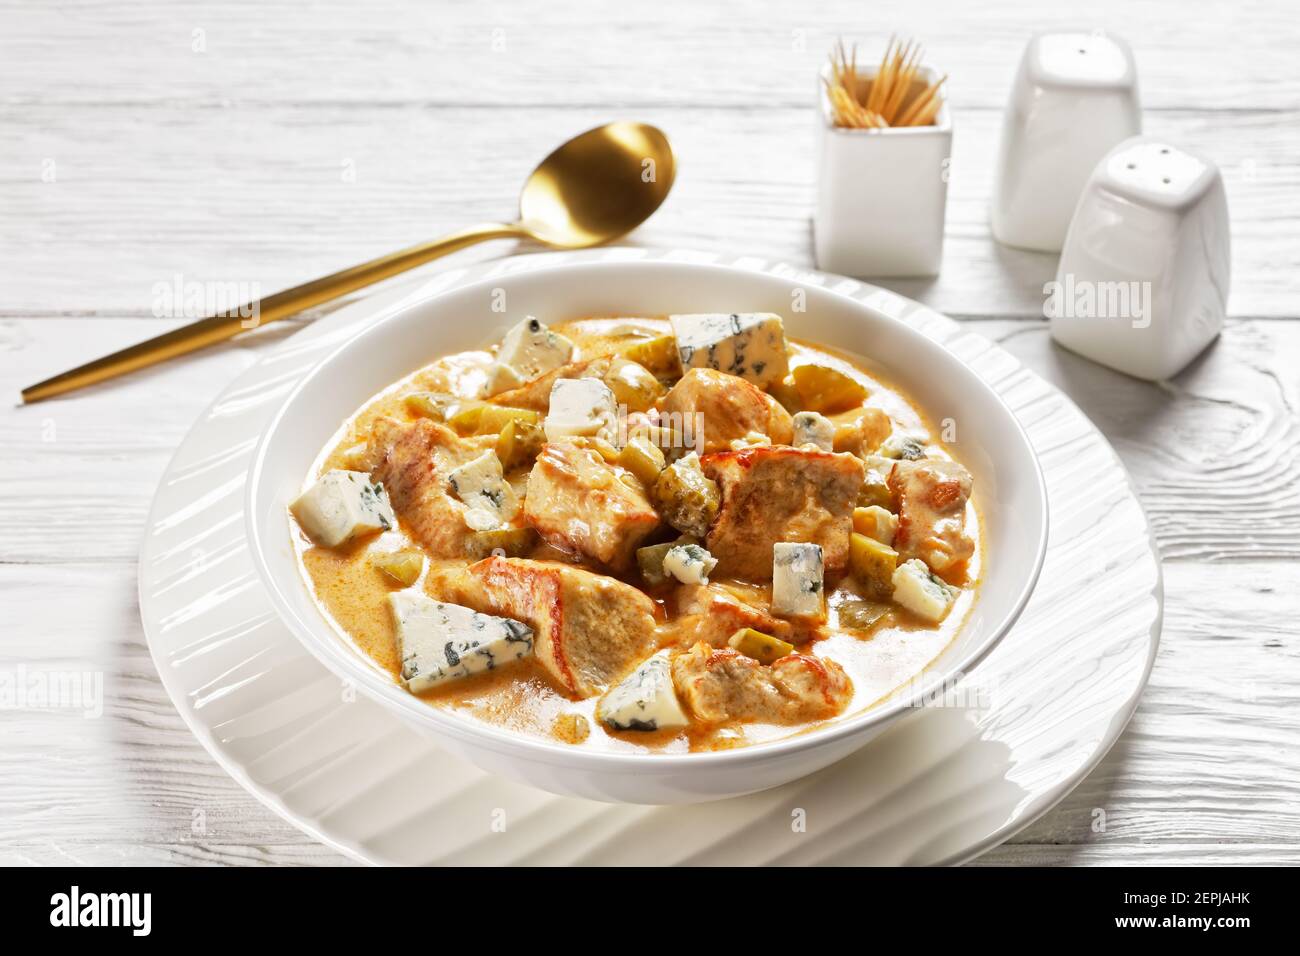 Cuisine allemande : ragoût de porc à la crème, cornichons et fromage bleu, paprika fumé servi sur une assiette blanche avec une cuillère dorée sur un dos en bois blanc Banque D'Images